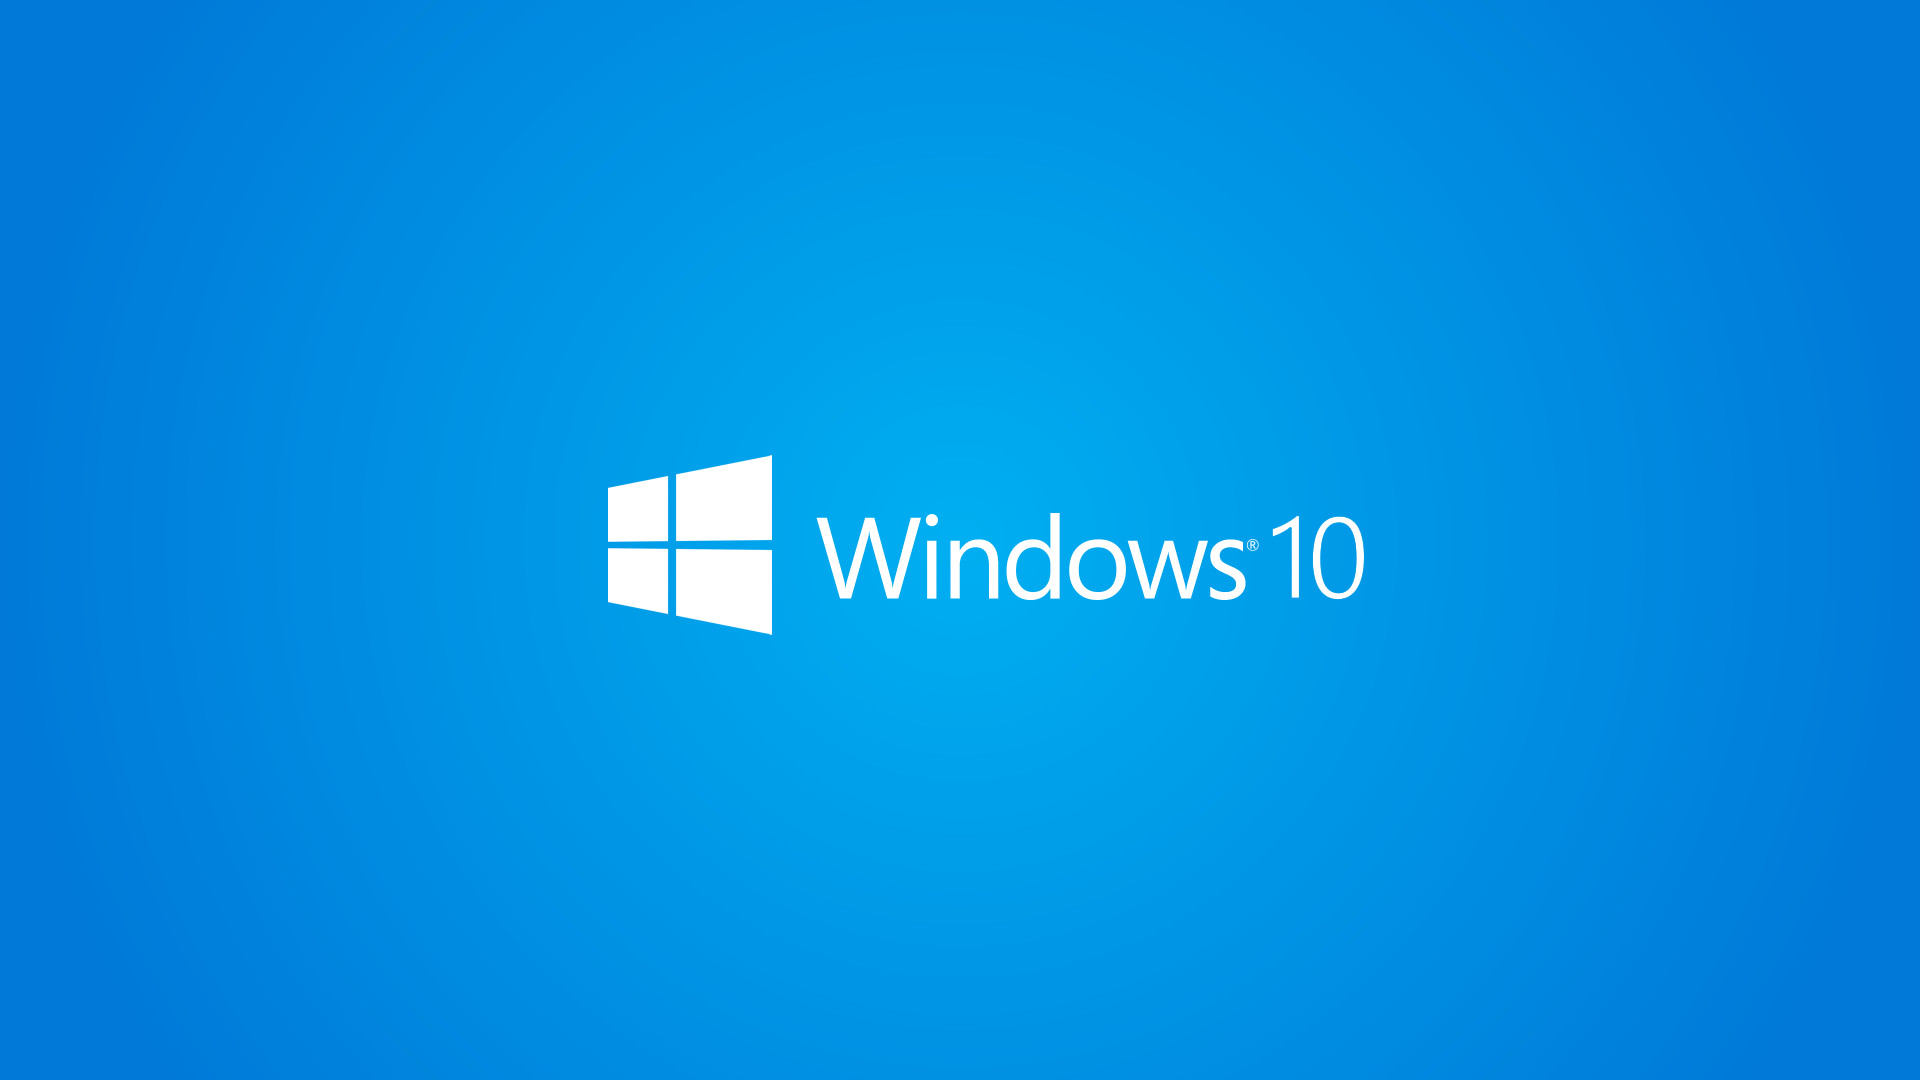 Windows 10 Wallpaper 1080p Full HD White Logo Blue Background